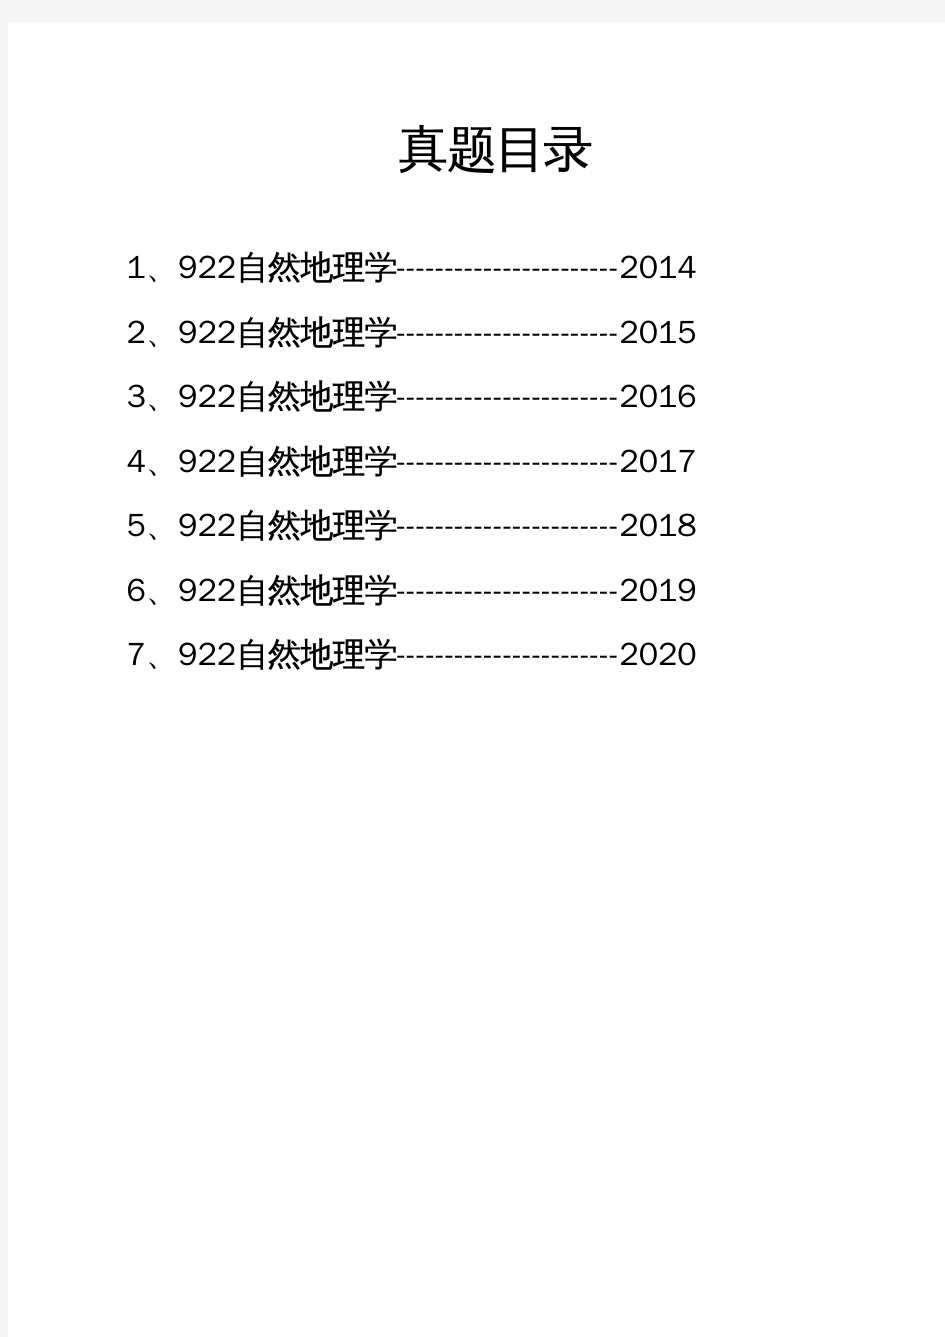 安徽师范大学《922自然地理学》历年考研真题(2014-2020)完整版